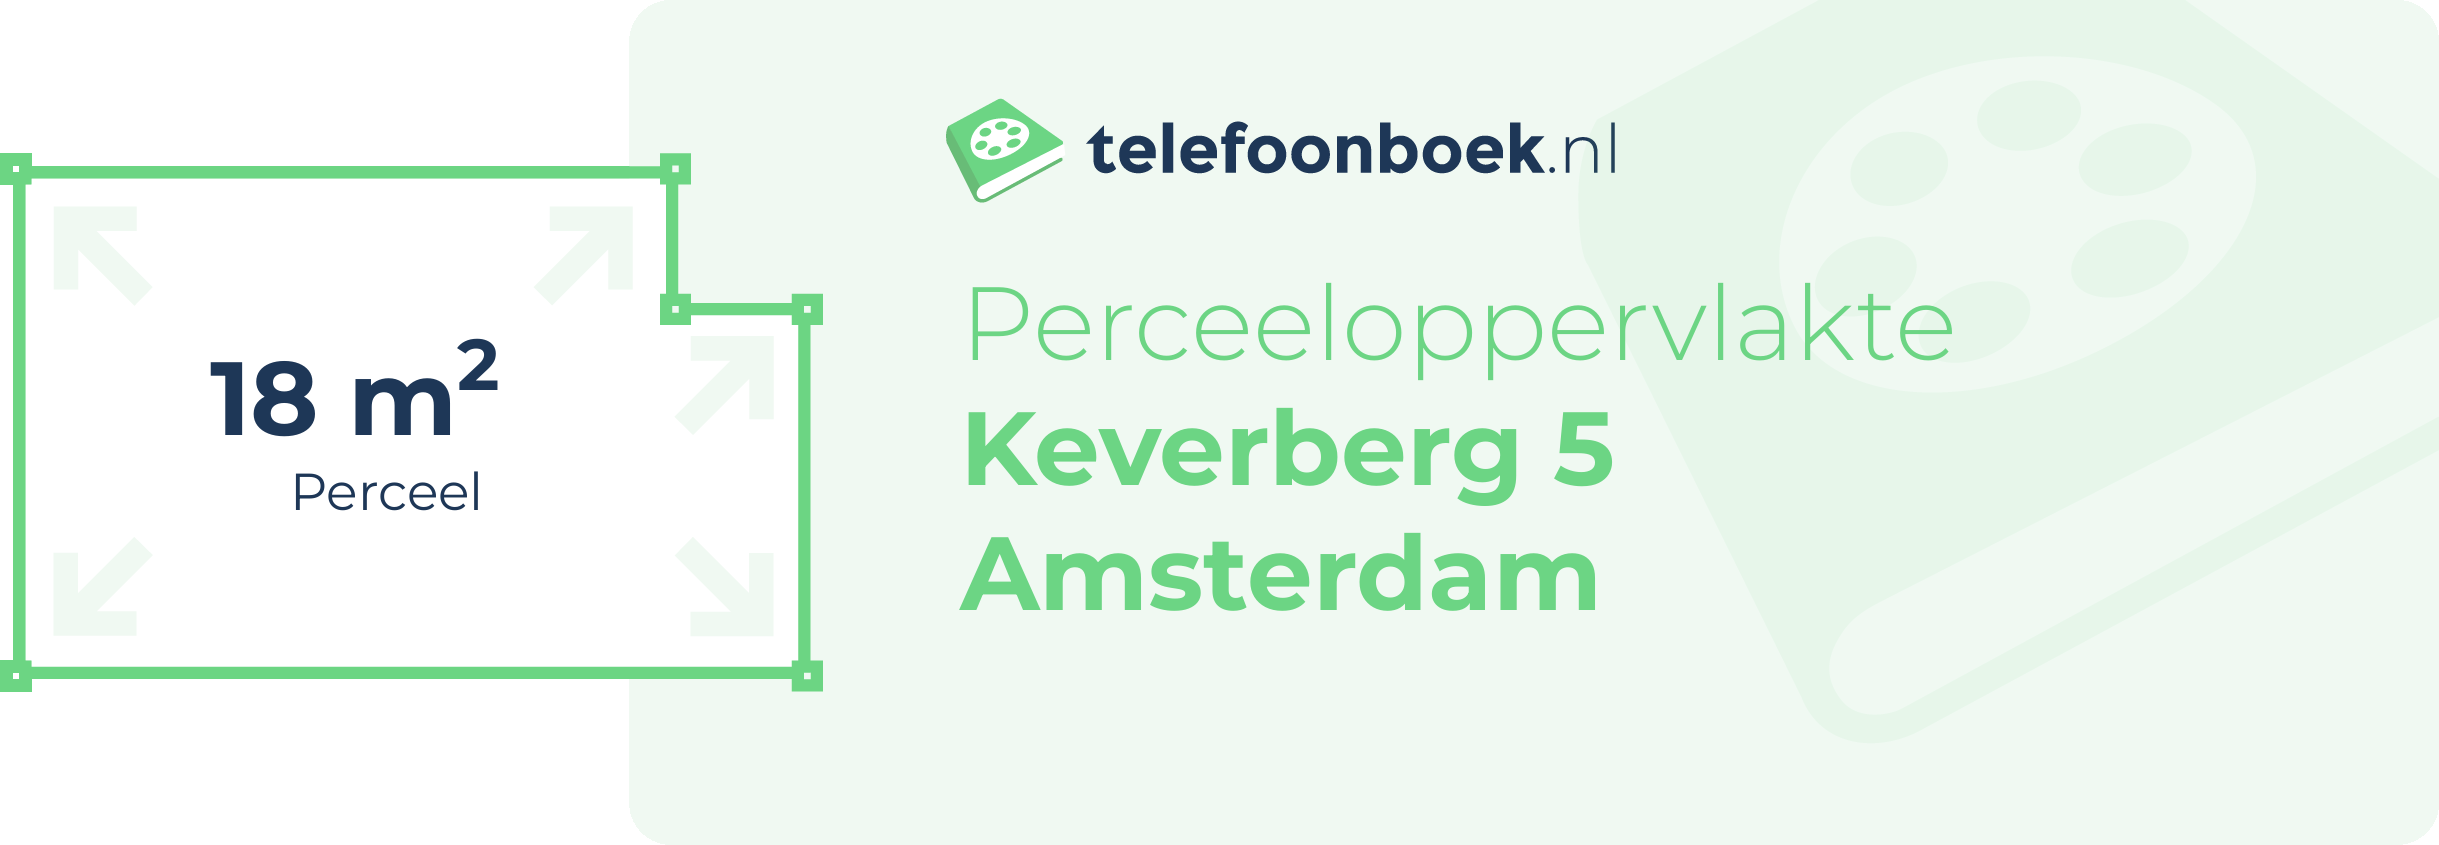 Perceeloppervlakte Keverberg 5 Amsterdam